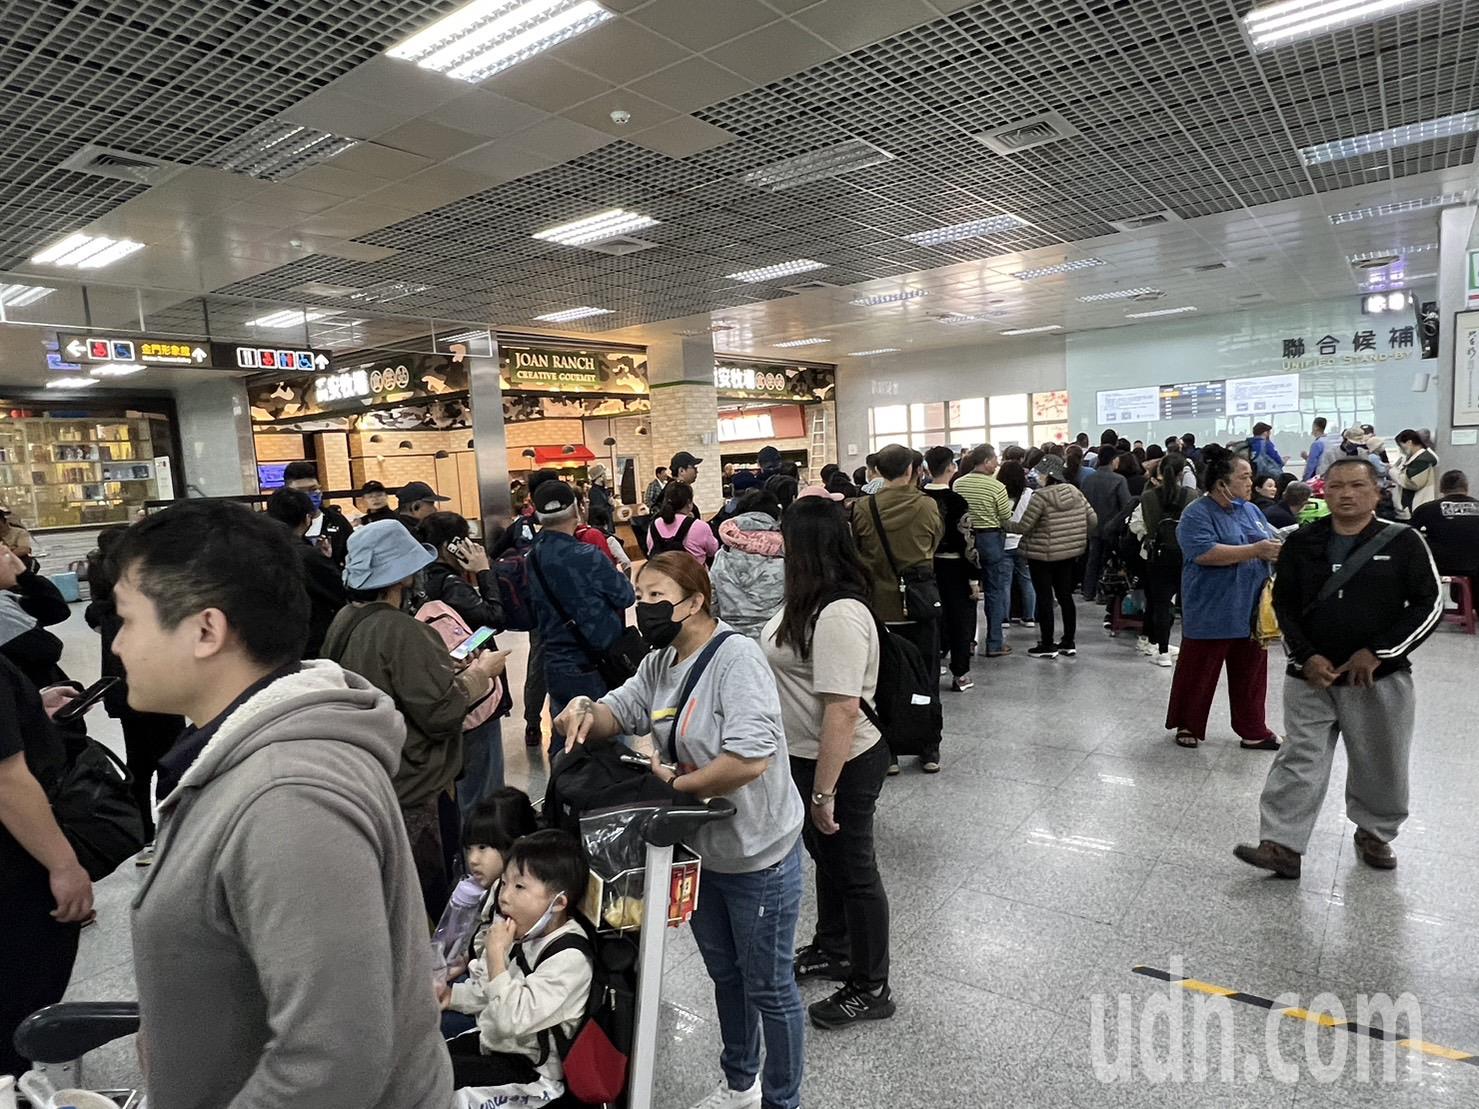 雾锁金门，金门尚义机场今天到目前都关场中，旅客只能焦急等待。记者蔡家蓁／摄影